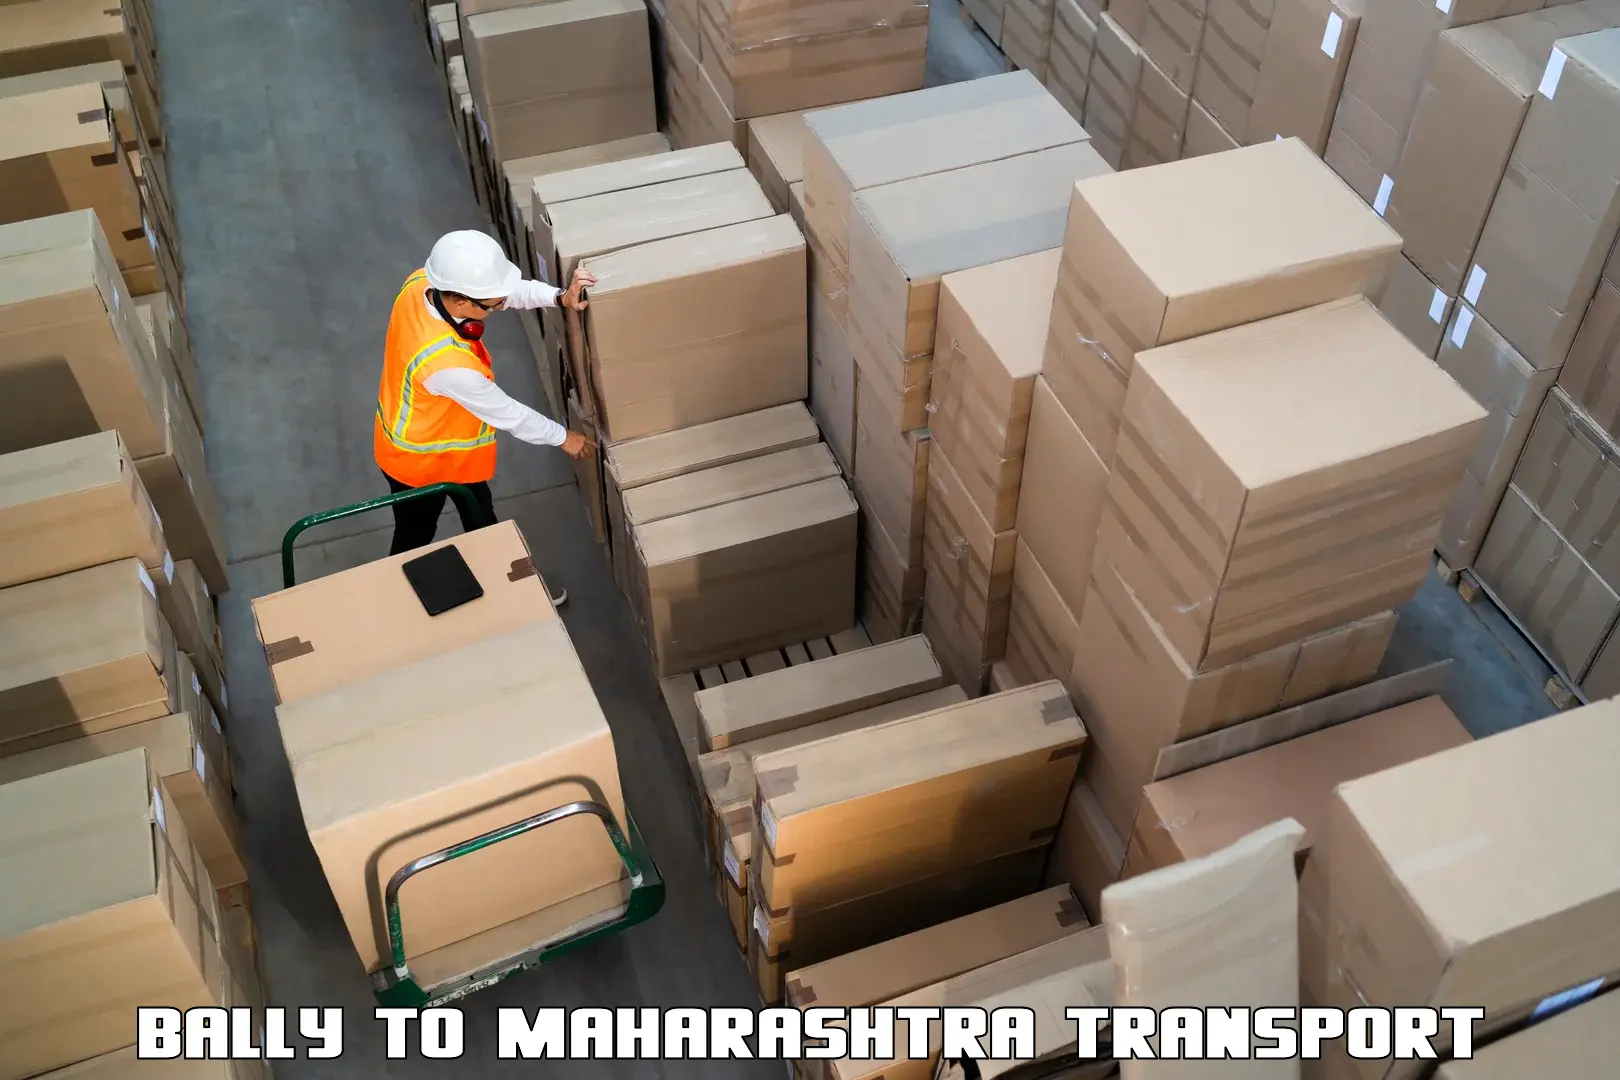 Transport in sharing Bally to Maharashtra